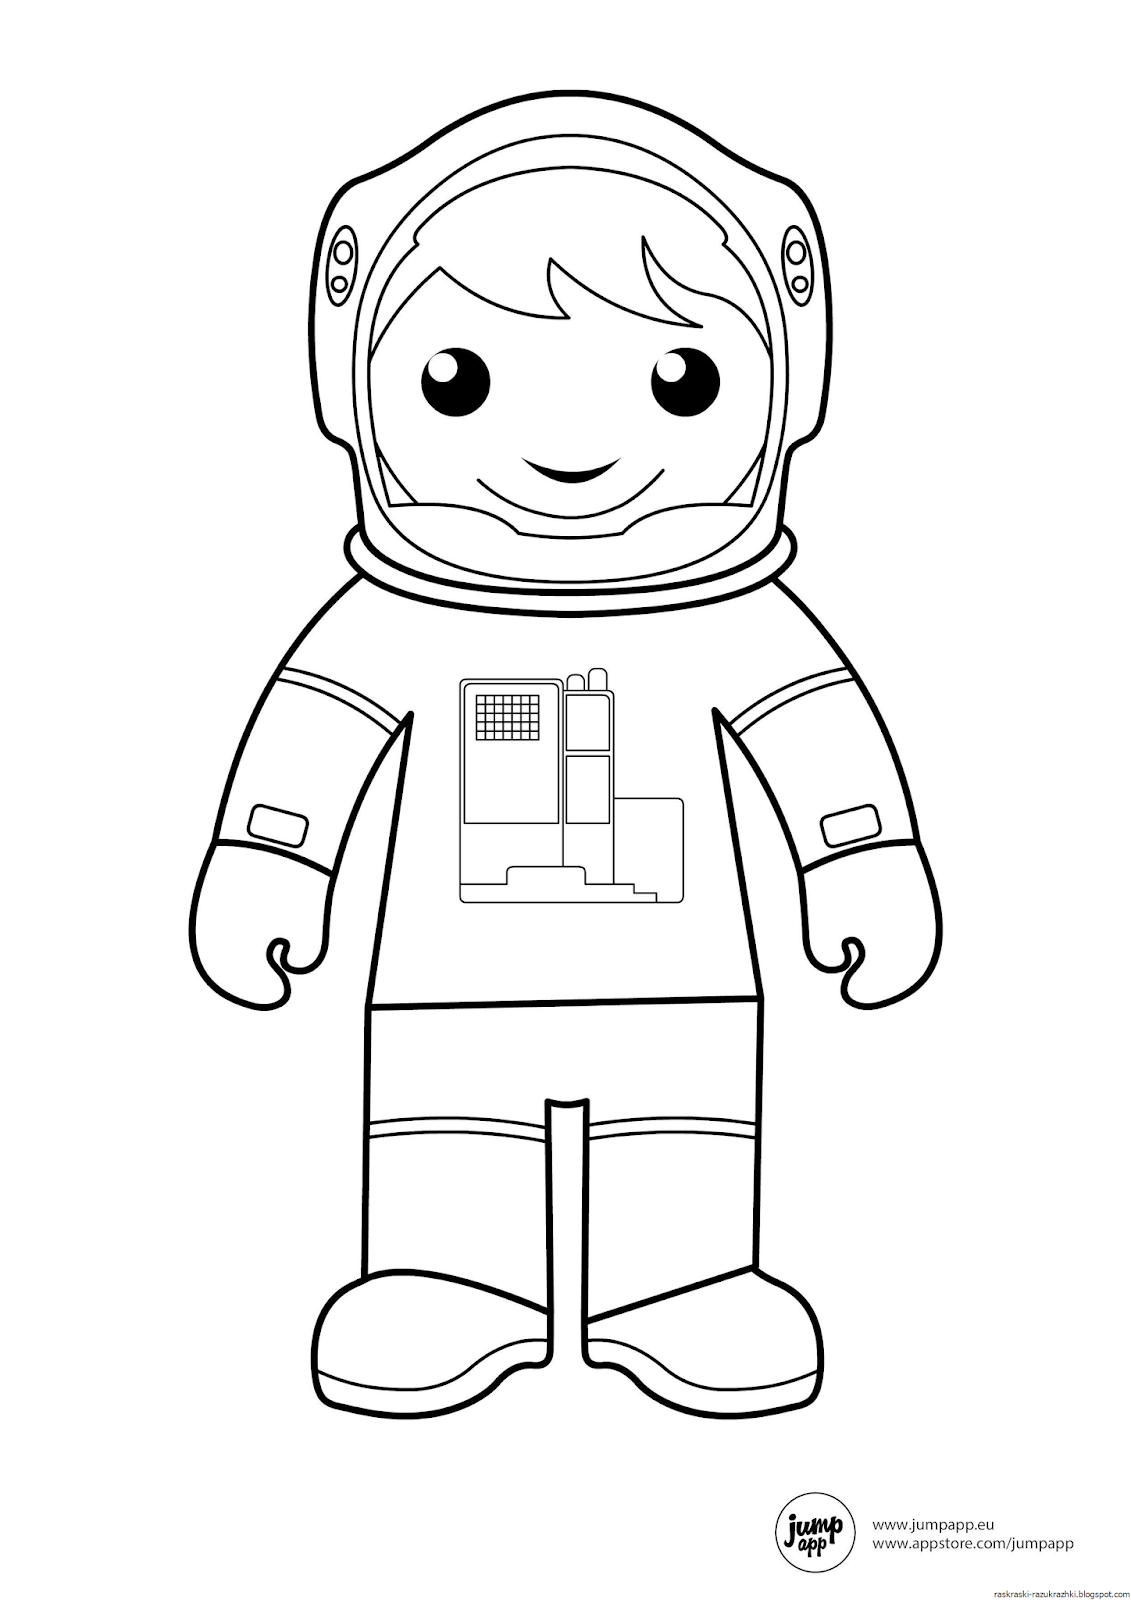 Шаблон космонавта для вырезания из бумаги распечатать. Космонавт раскраска для детей. Космонавт раскраска для малышей. Космонавт картинка для детей раскраска. Rjcvjyfdnраскраска для детей.